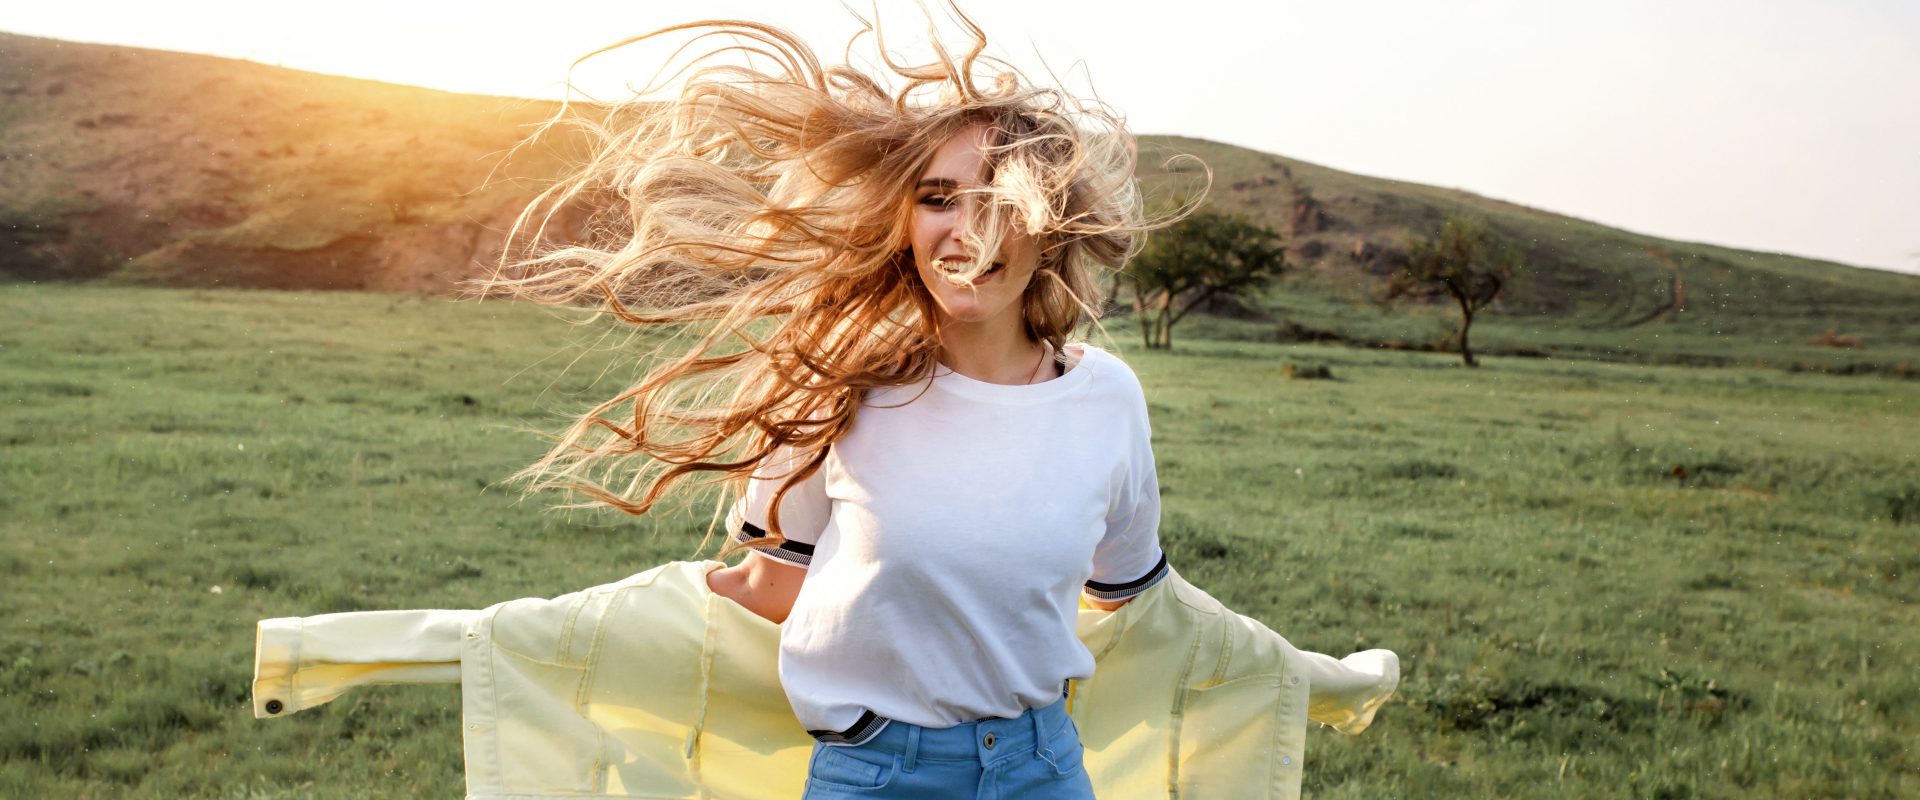 Wiosenne SPA dla włosów, czyli jak pielęgnować włosy wiosną - Kobieta na zielonym wzgórzu z rozwianymi na wietrze blond włosami uśmiecha się do aparatu.